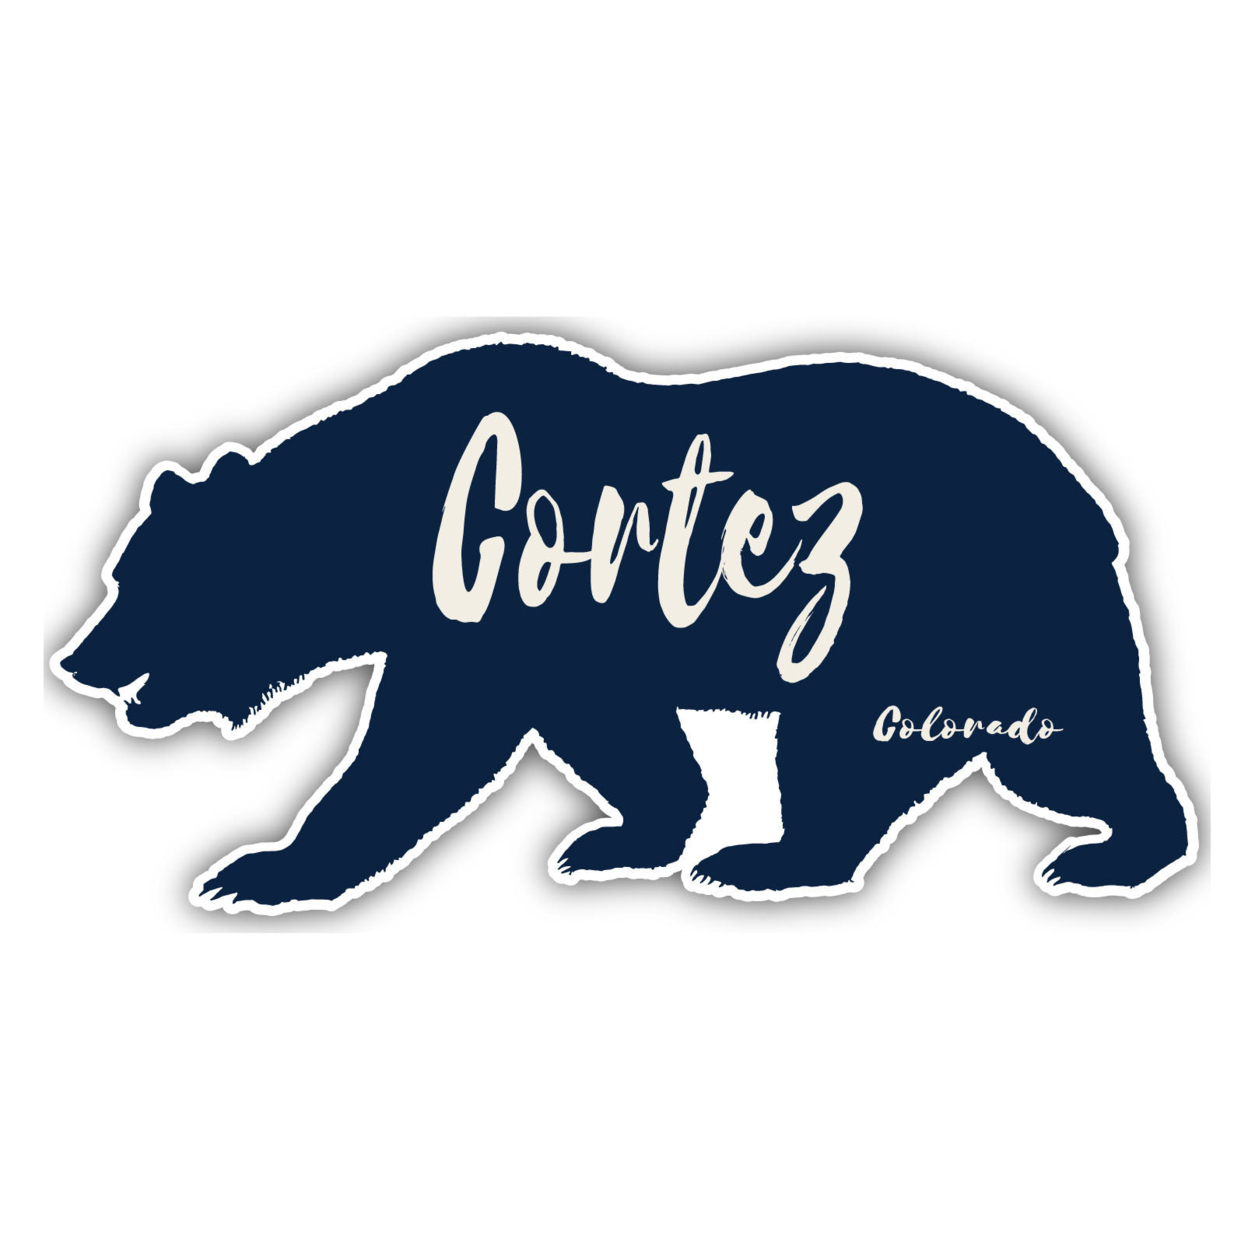 Cortez Colorado Souvenir Decorative Stickers (Choose Theme And Size) - 4-Pack, 4-Inch, Tent